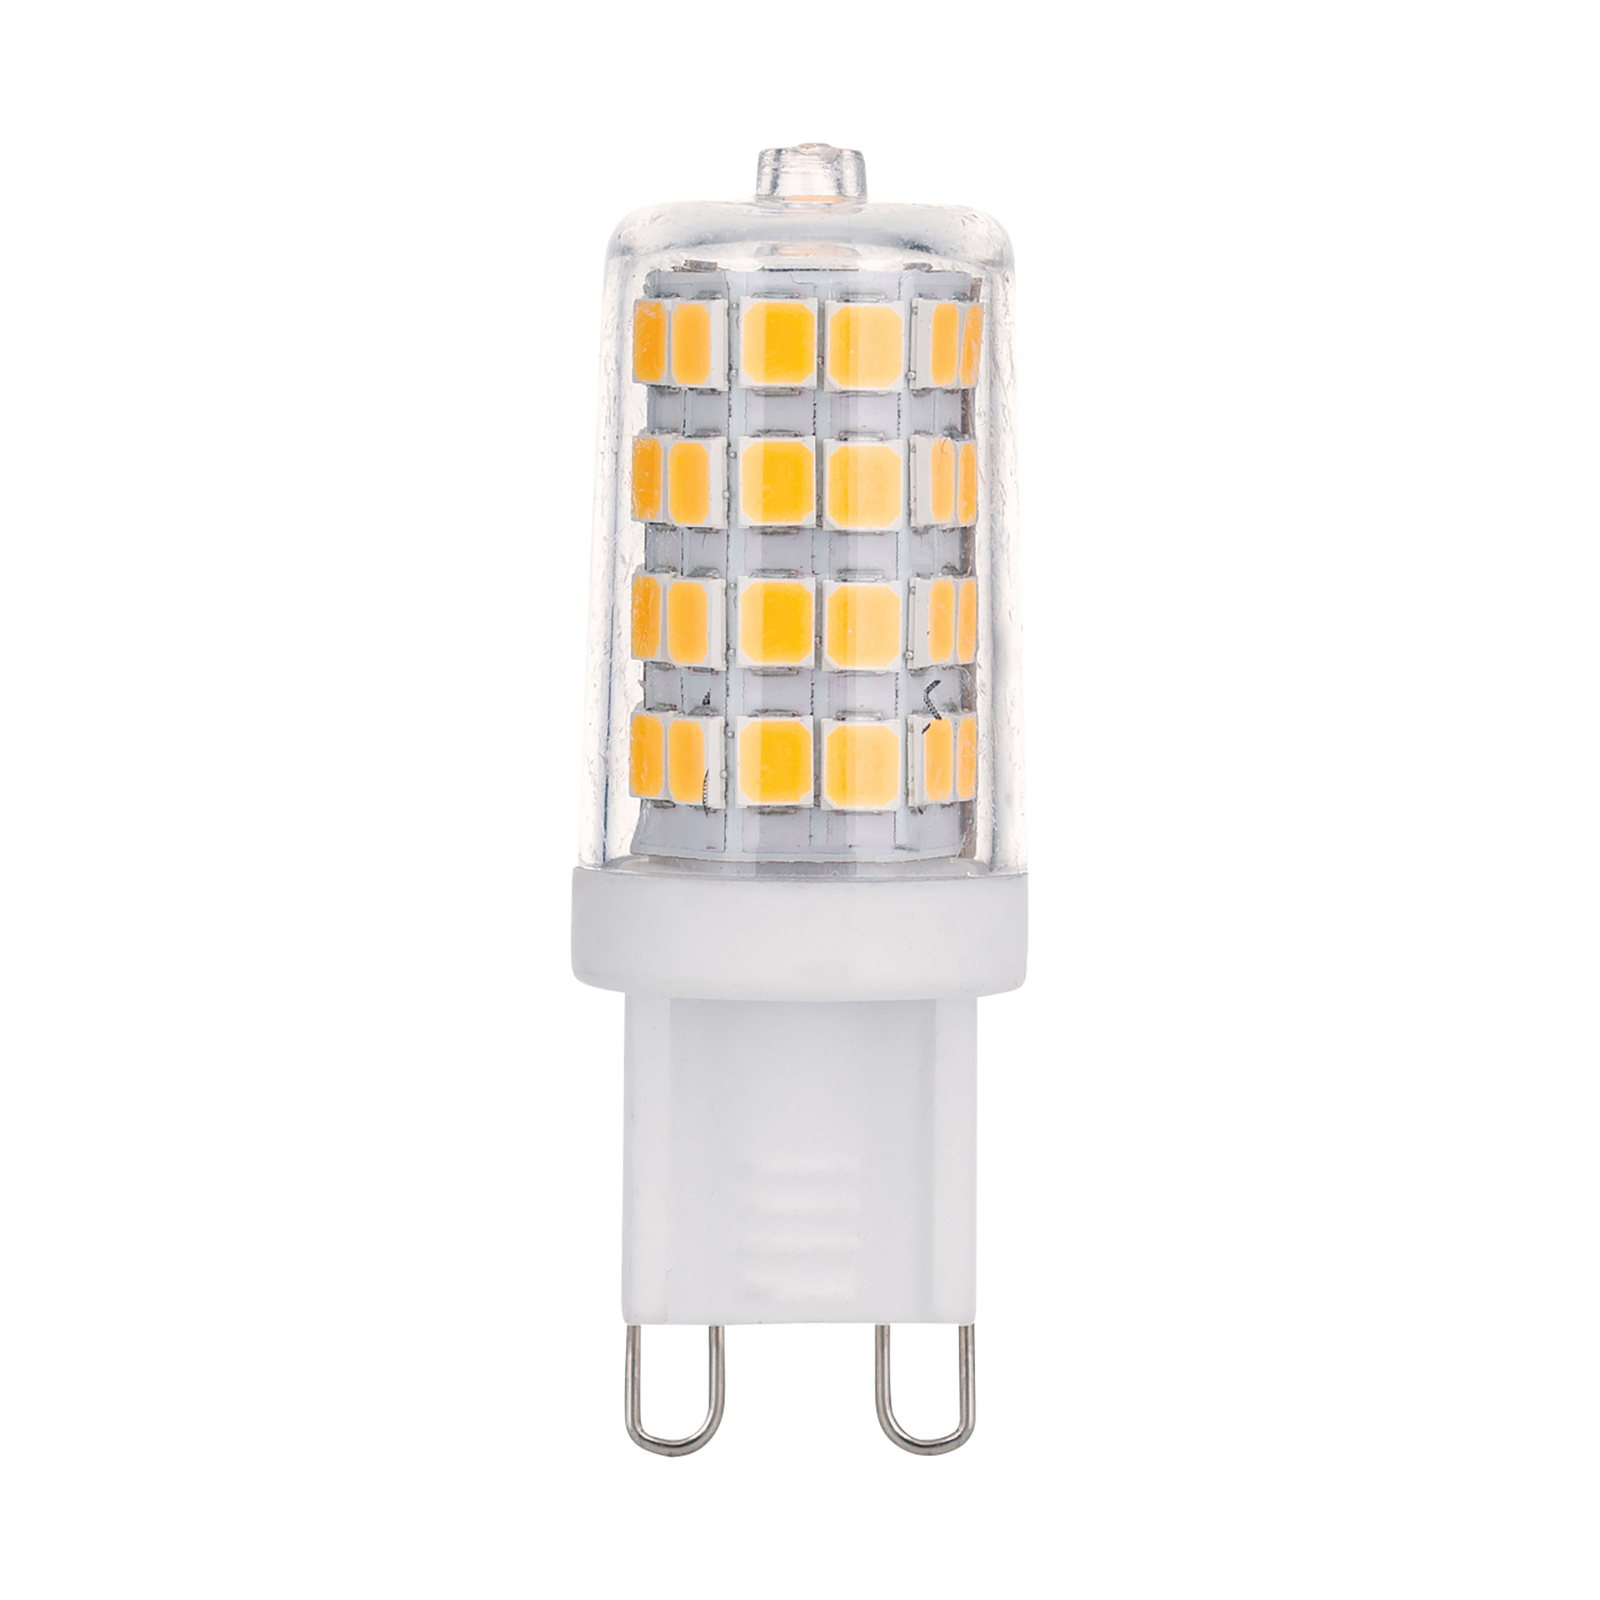 LED stiftlamp G9 3,3W 2.800K helder